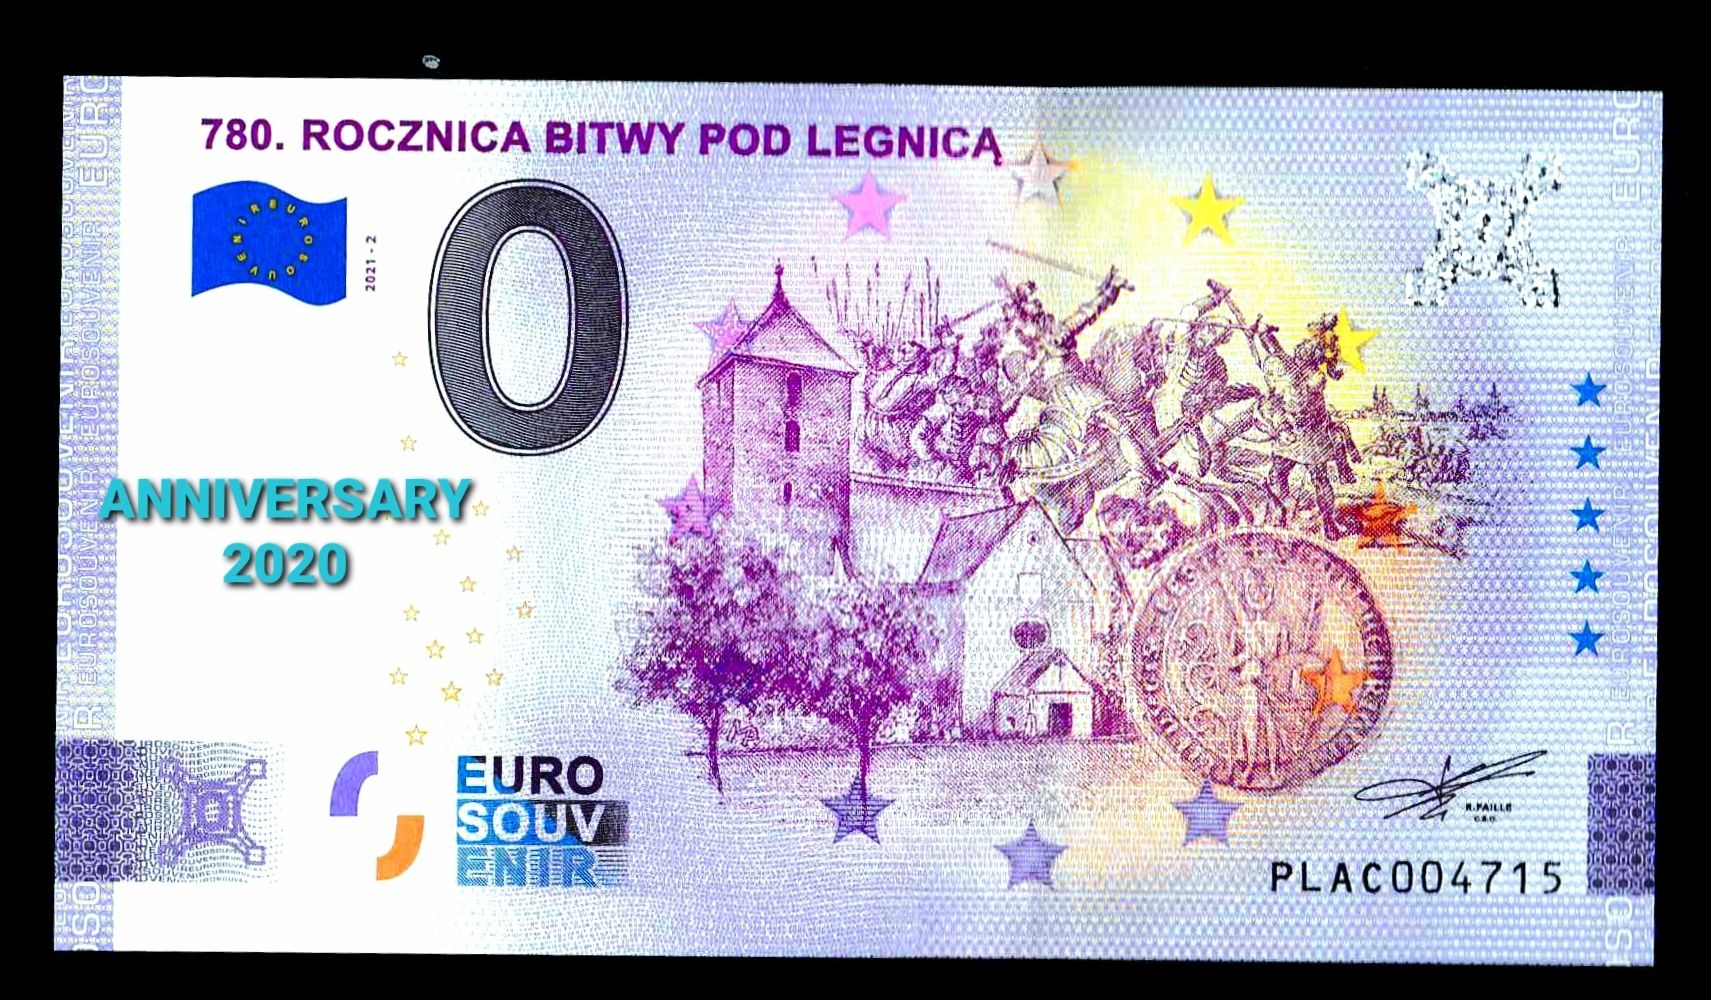 0 euro Rocznica bitwy pod Legnica Anniversary